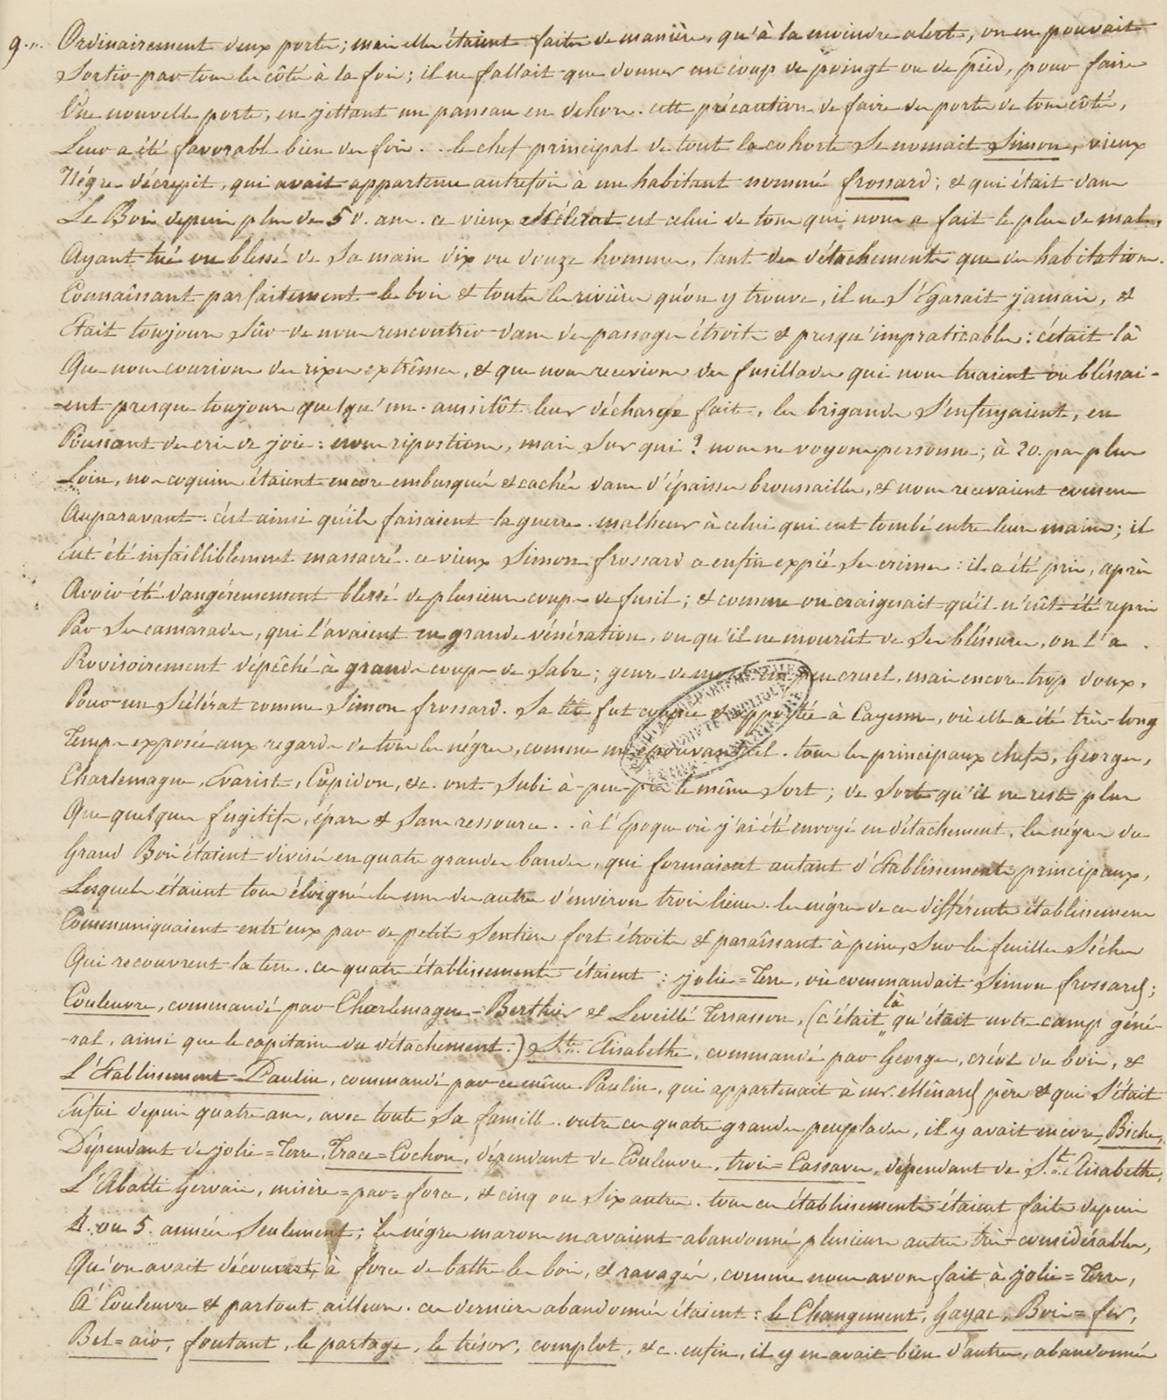 Extrait d'une lettre de Sévère Hérault adressée à sa soeur, Léonice.